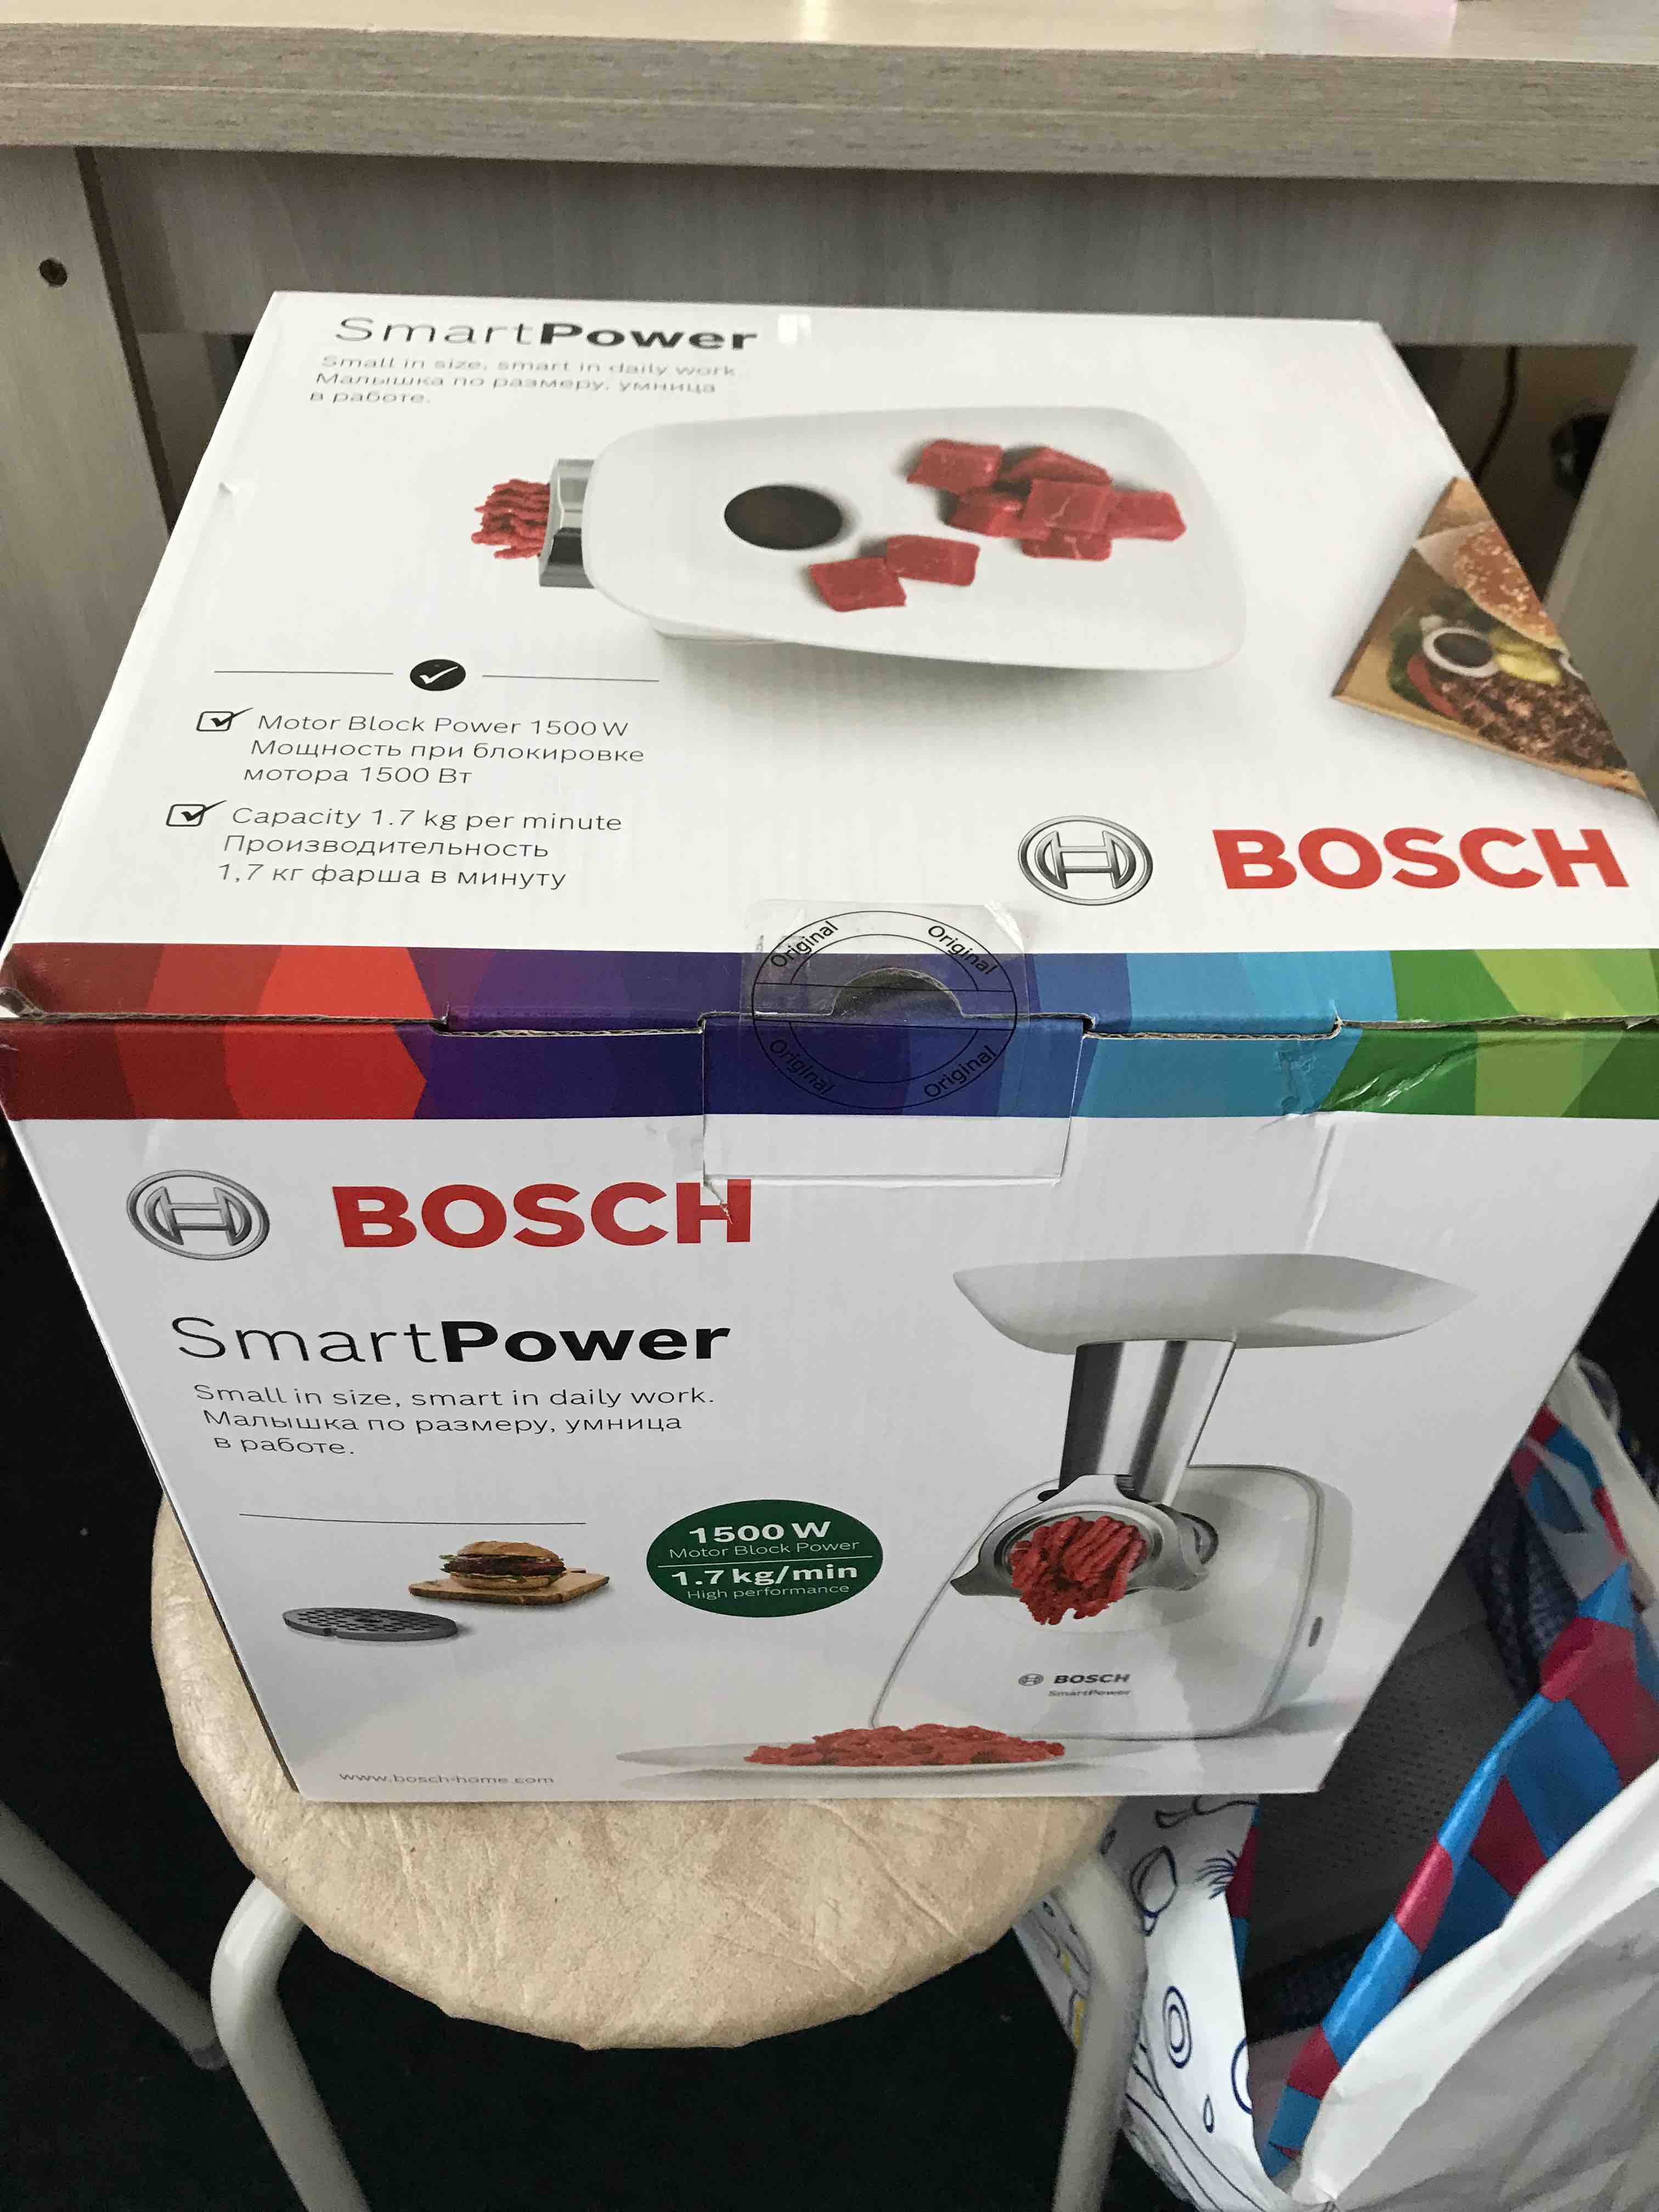 Электромясорубка Bosch SmartPower White, купить в Мегамаркет Москве, на цены интернет-магазинах в MFW2500W